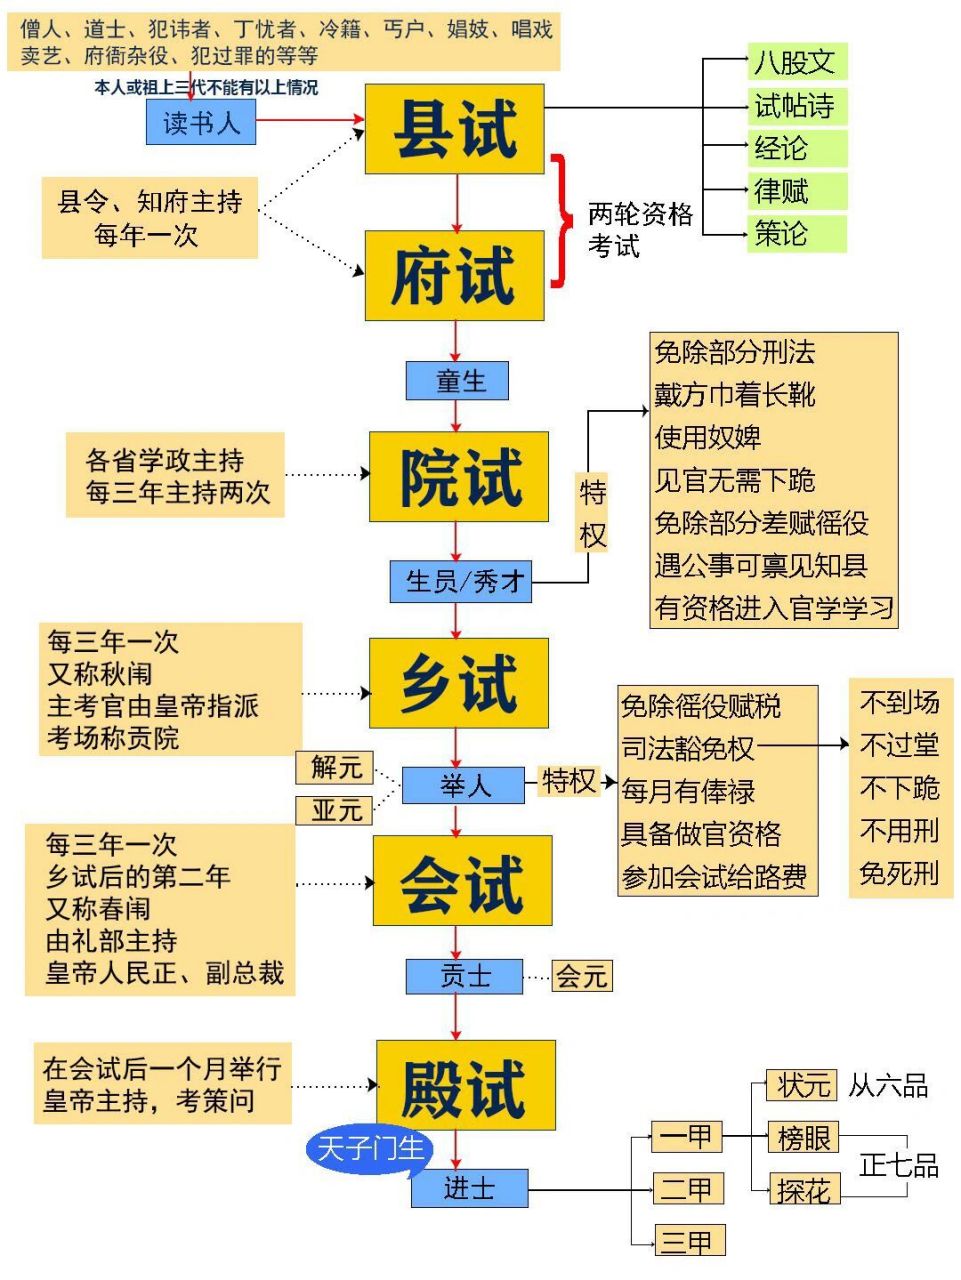 清朝的科举制度,从低到高共有六个等级的考试,每级考试